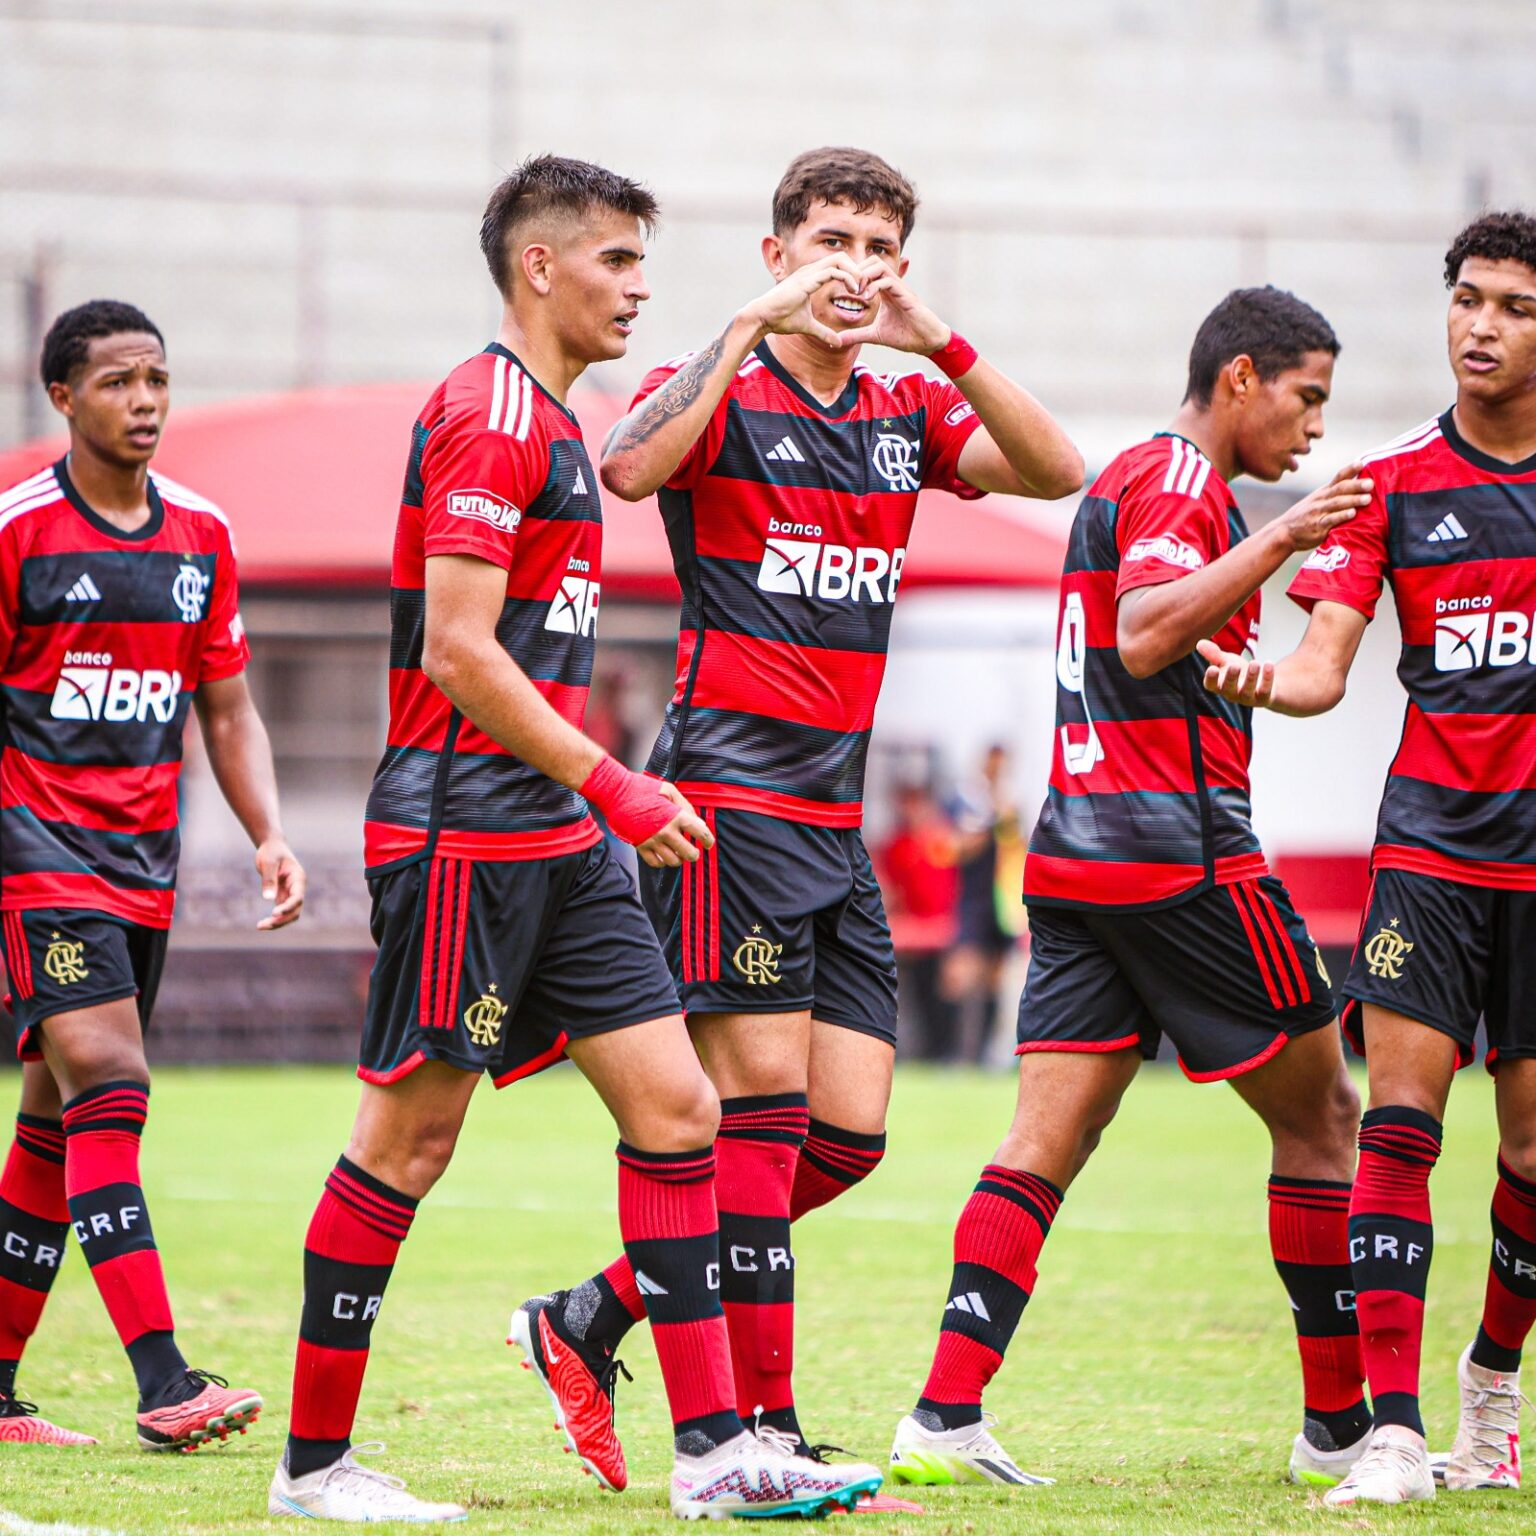 Campeonato Carioca Sub-15 e Sub-17 – Quartas de Final Jogo 1